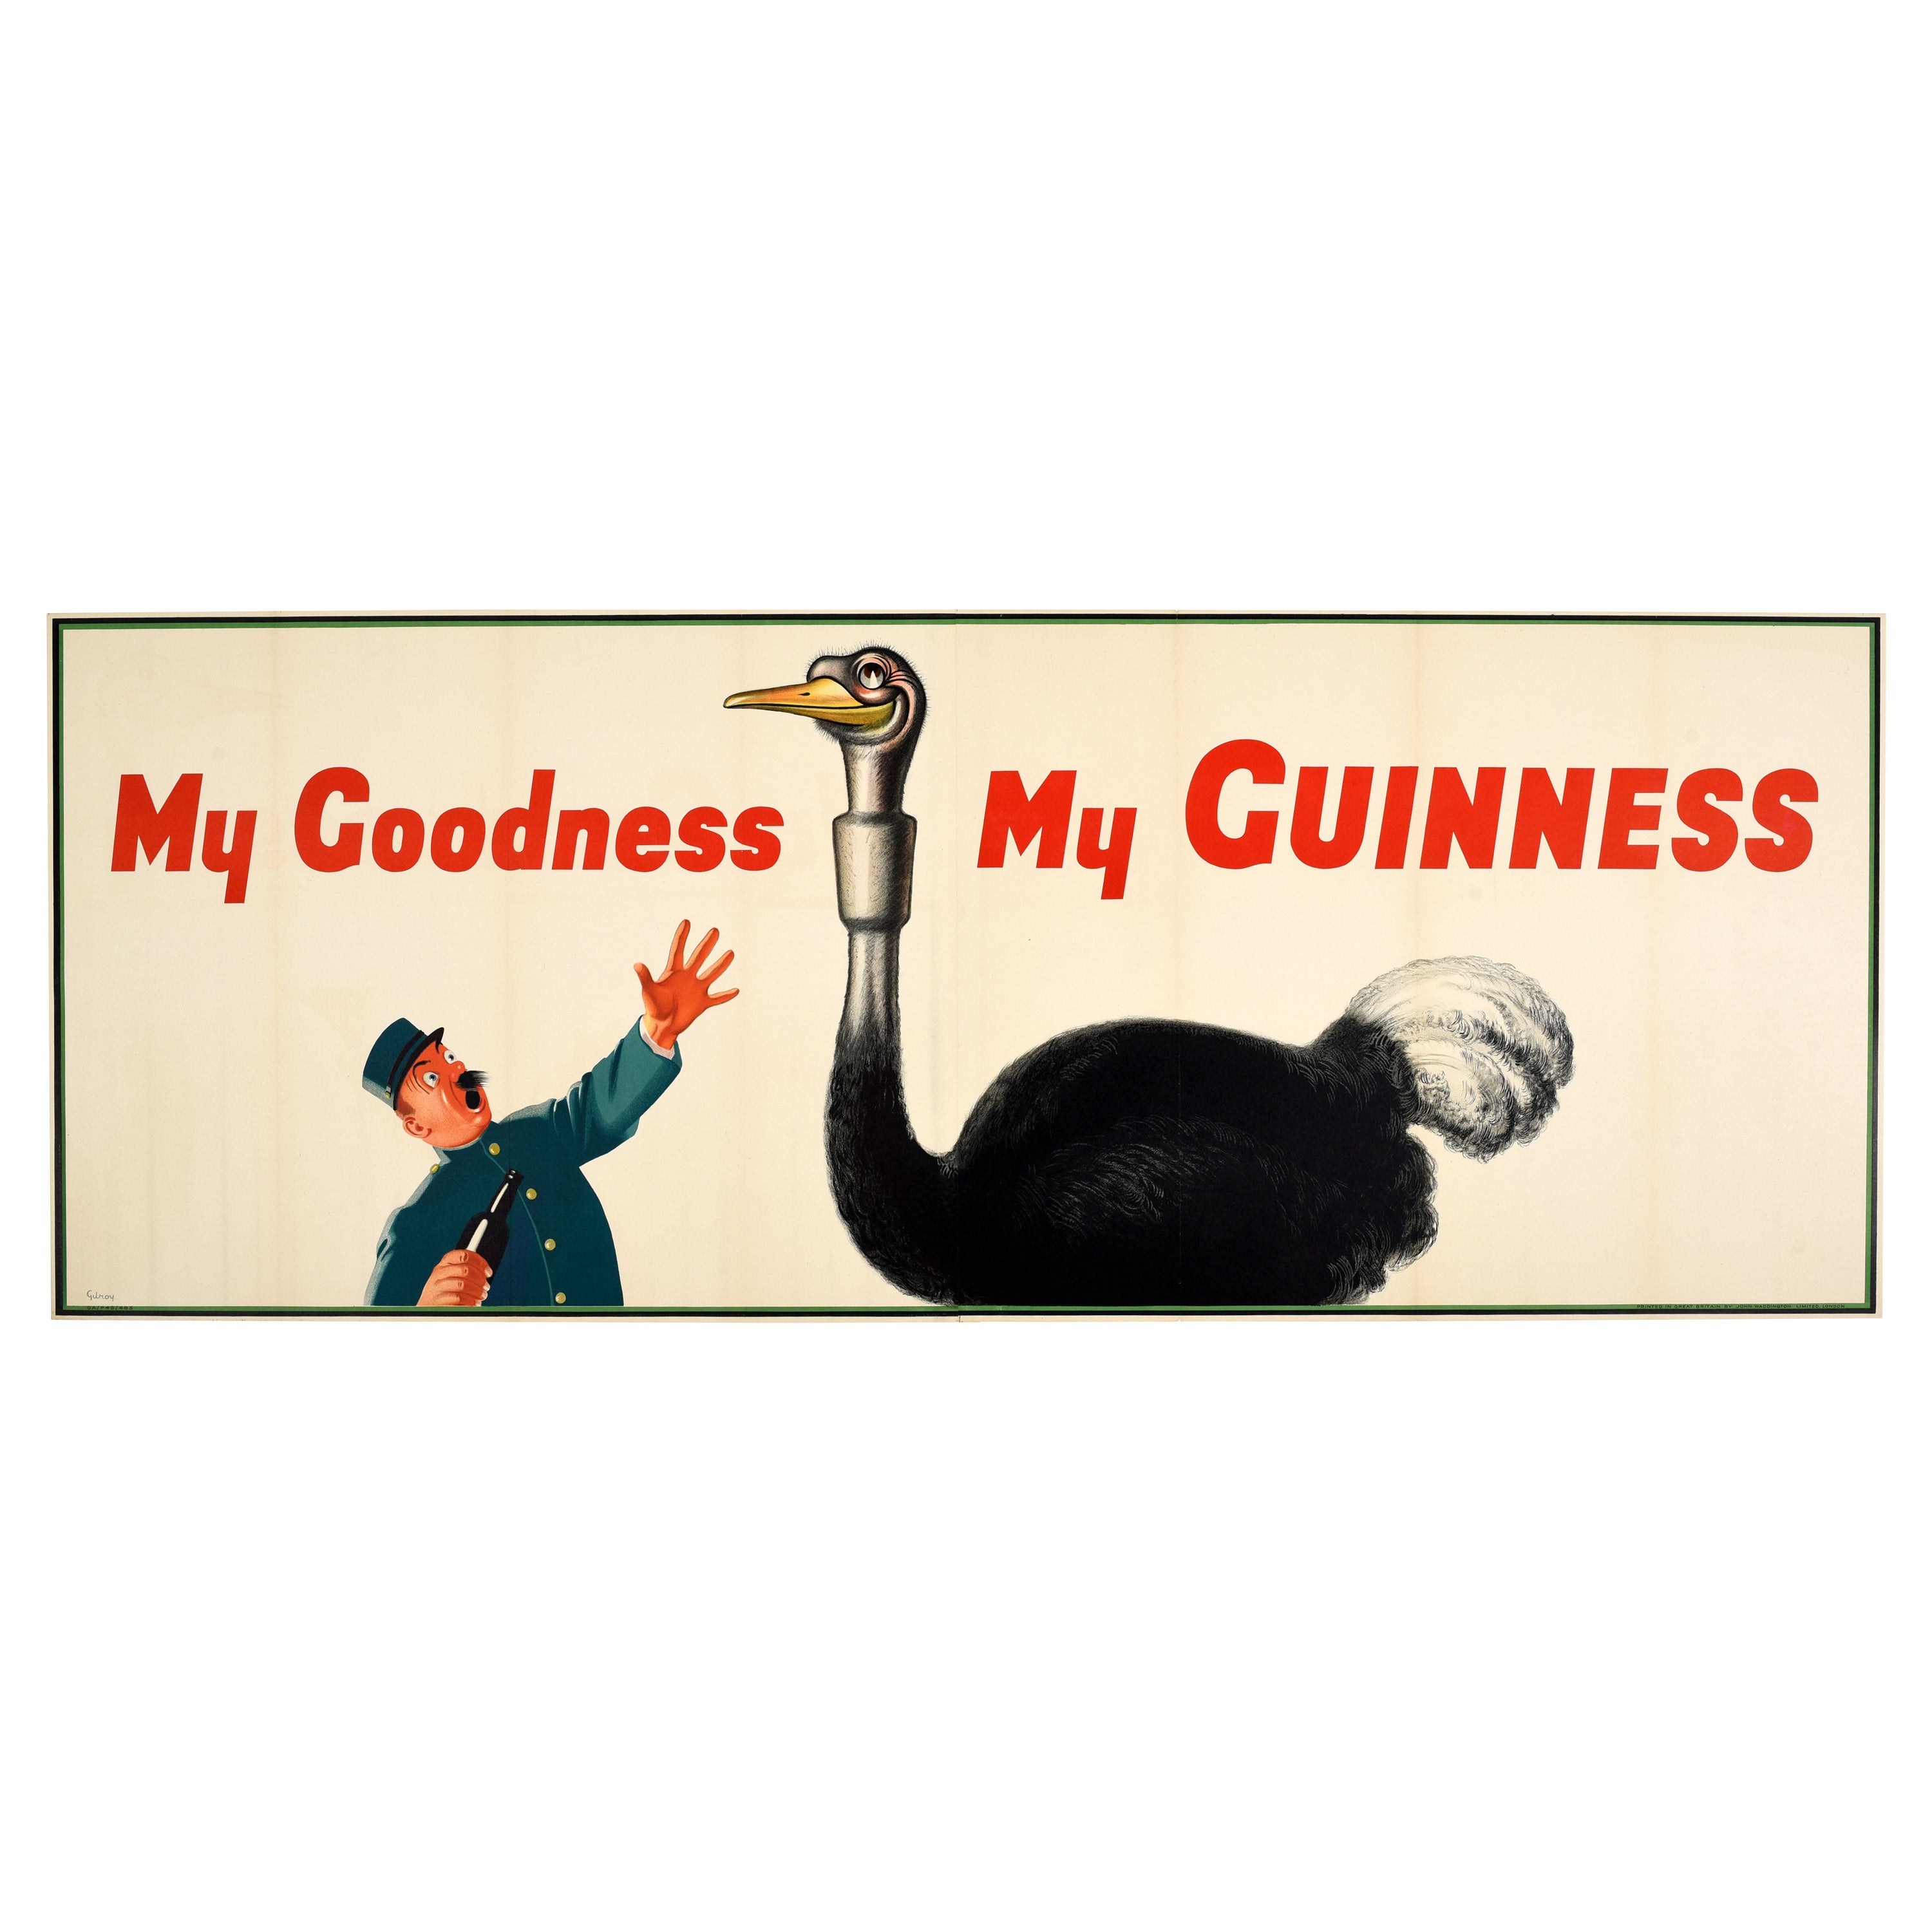 Affiche publicitaire originale vintage pour les boissons - My Goodness My Guinness - Dessin d'autruche en vente